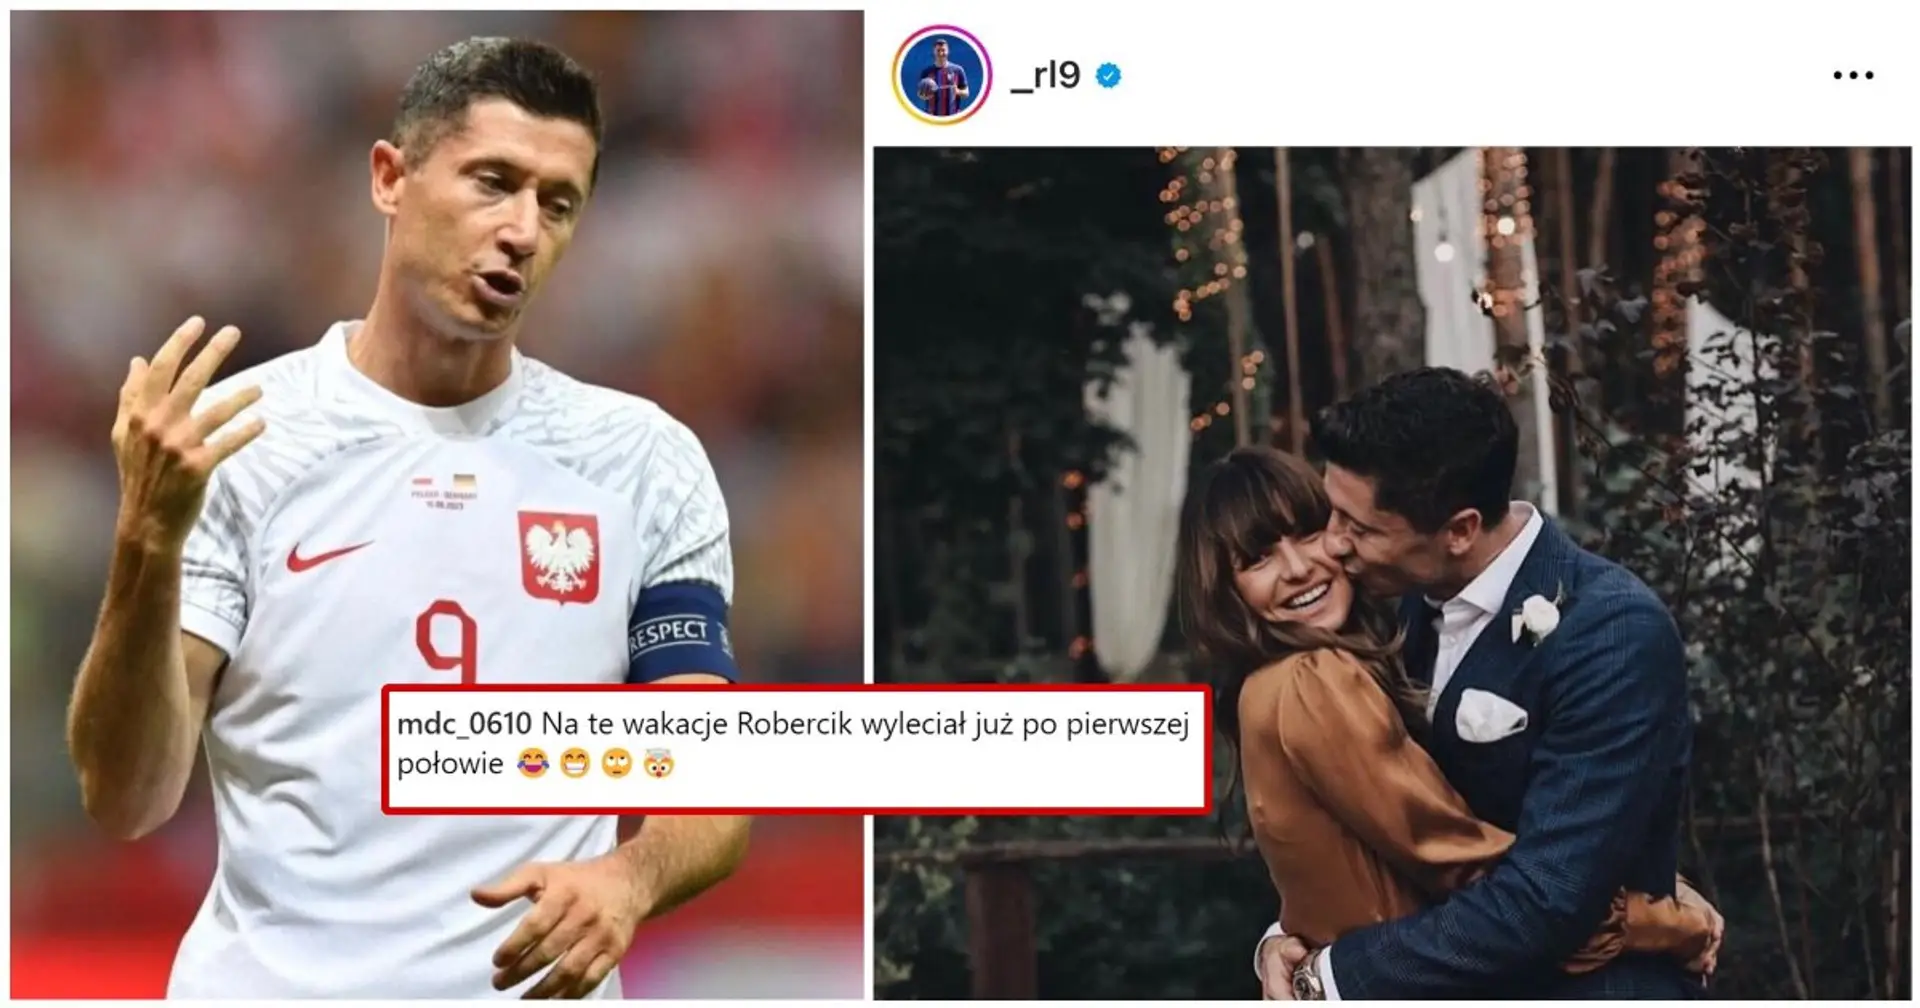 "Ein Haufen falscher Leute": Lewandowski widmete seinen Post dem Hochzeitstag, wurde aber von den Fans heftig kritisiert